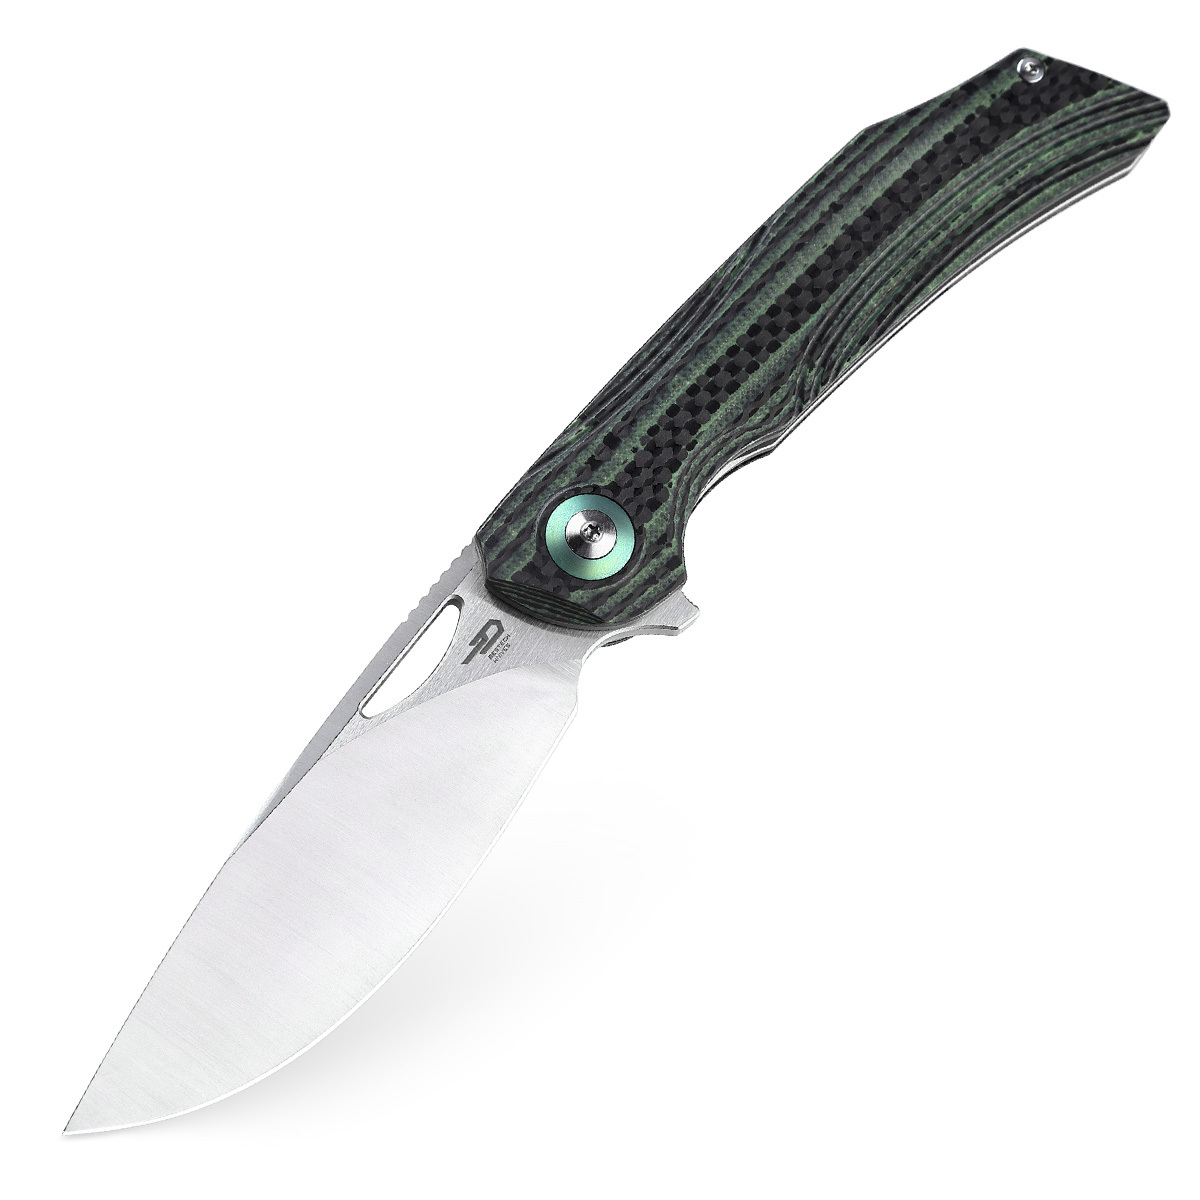 Складной нож Bestech Falko, сталь 154CM, рукоять G10/Carbon fiber, зеленый складной нож bestech lion d2 песочный